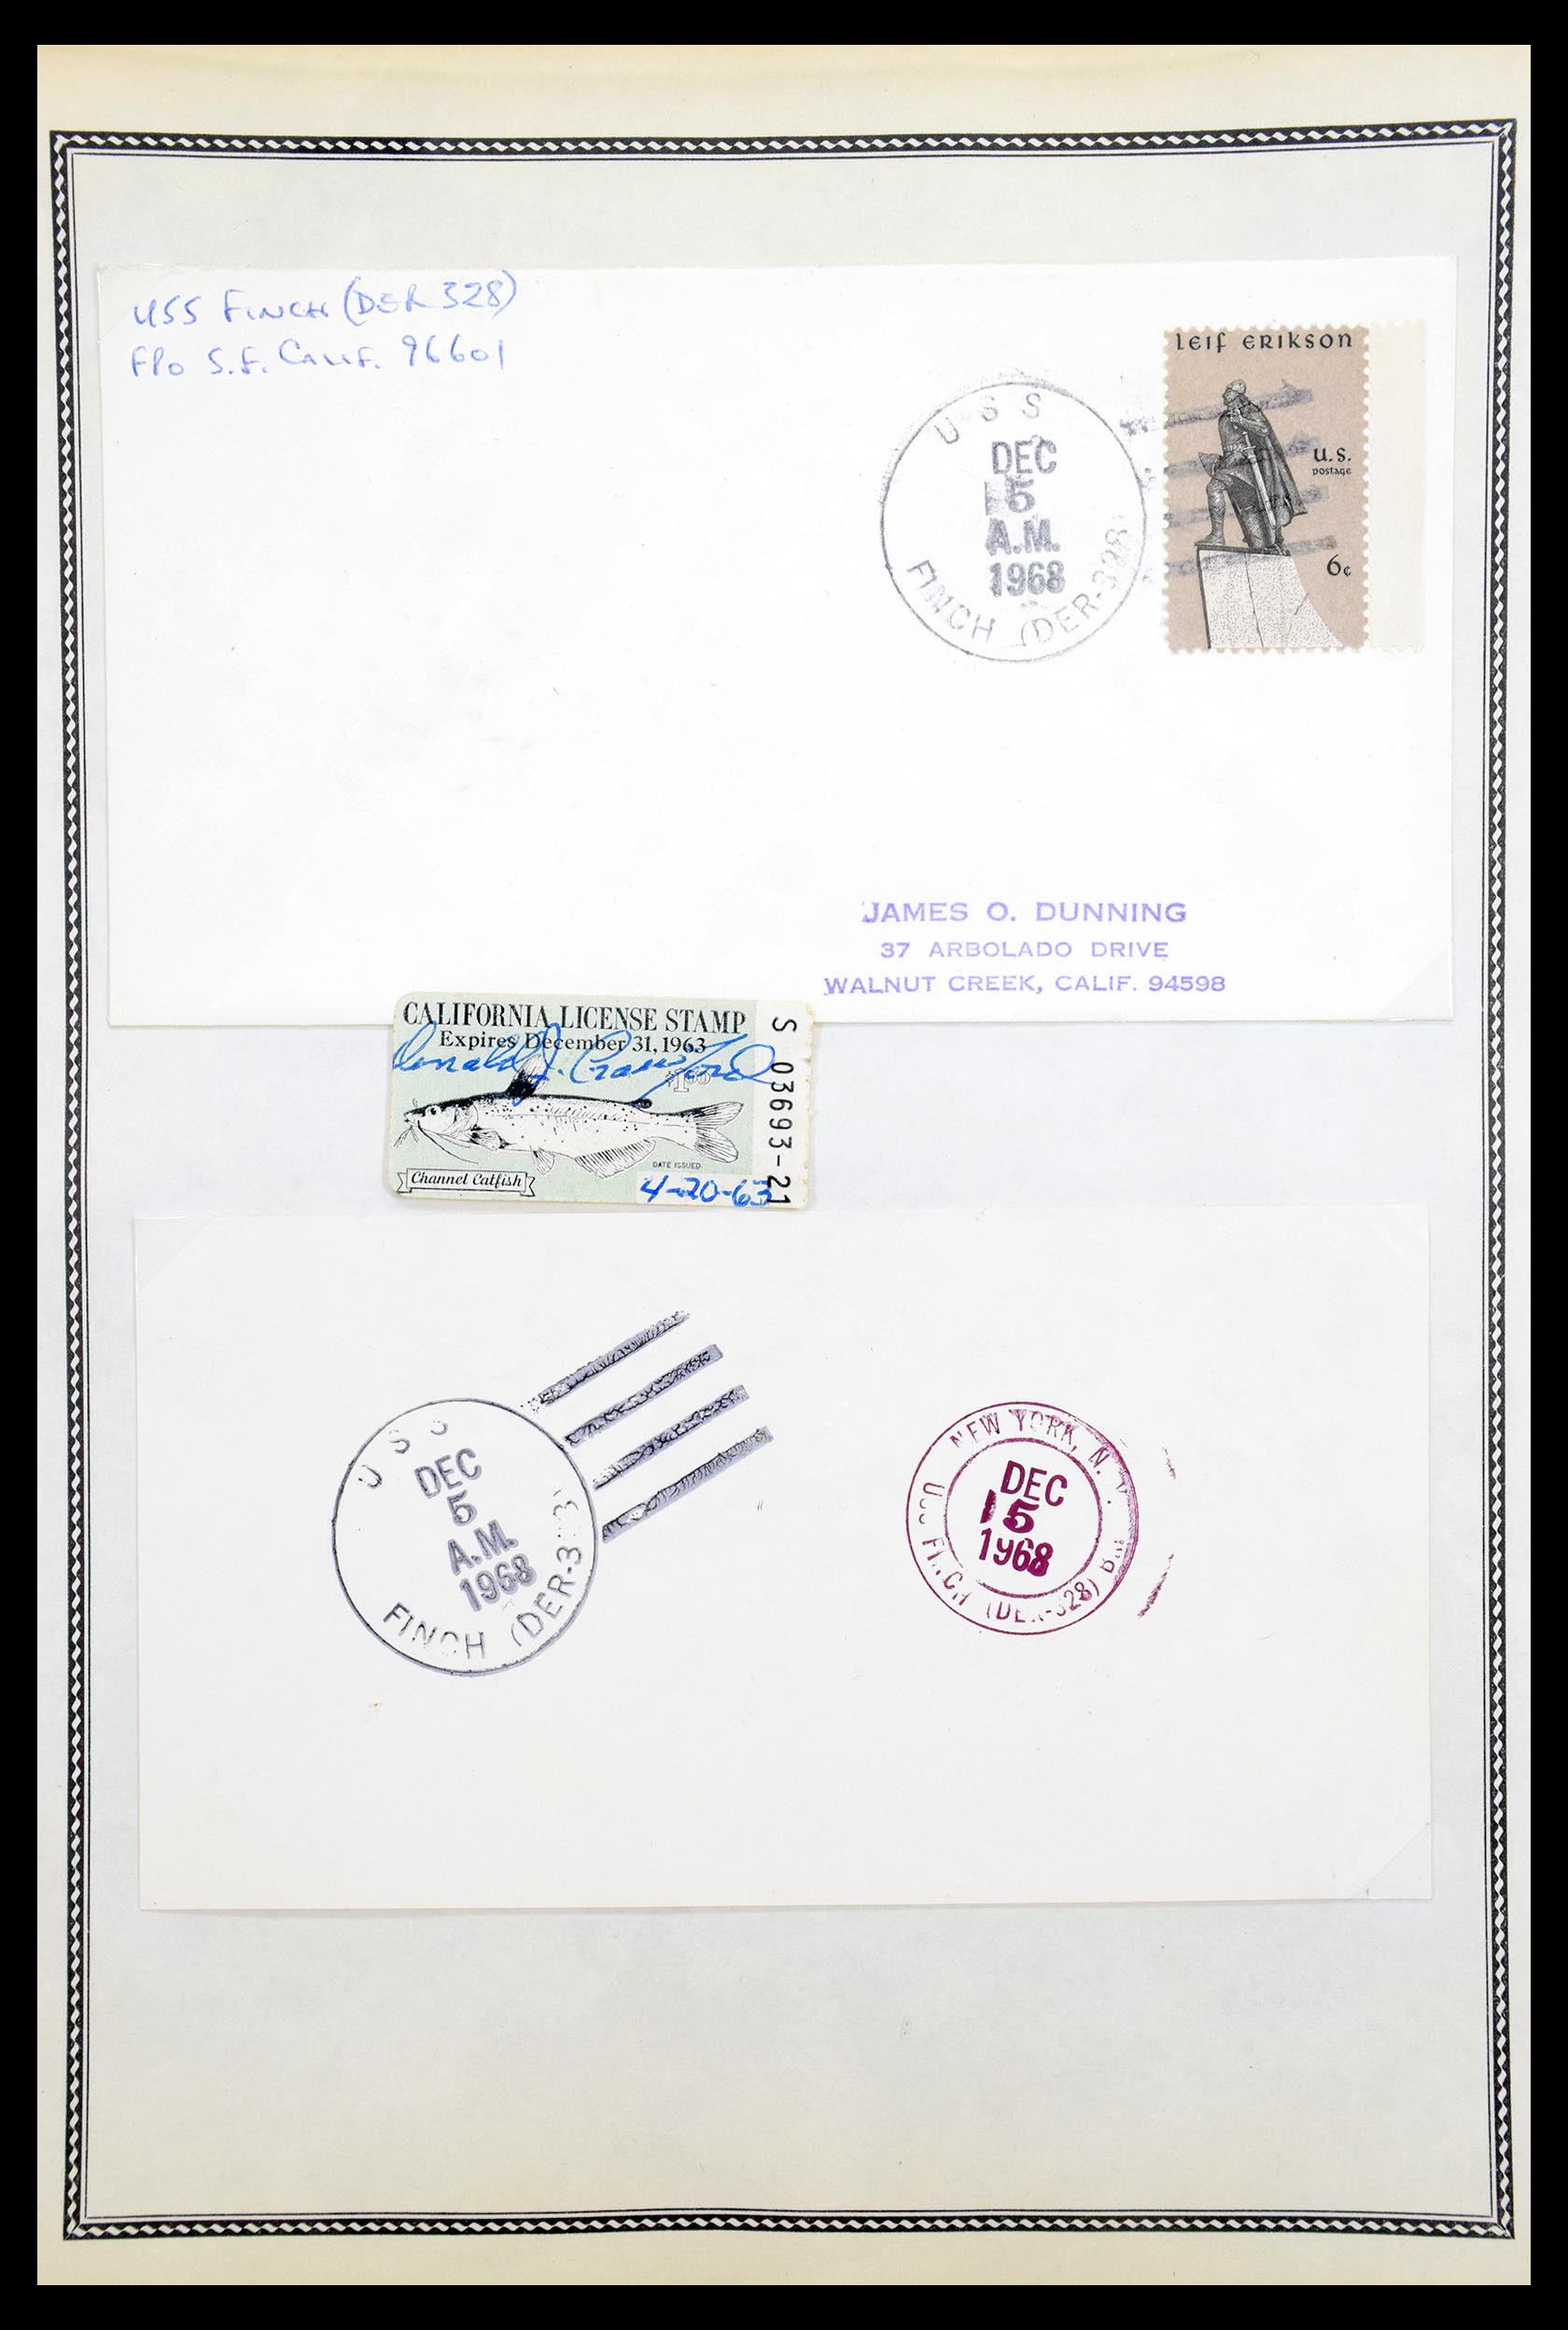 30341 093 - 30341 USA scheepspost brieven 1930-1970.